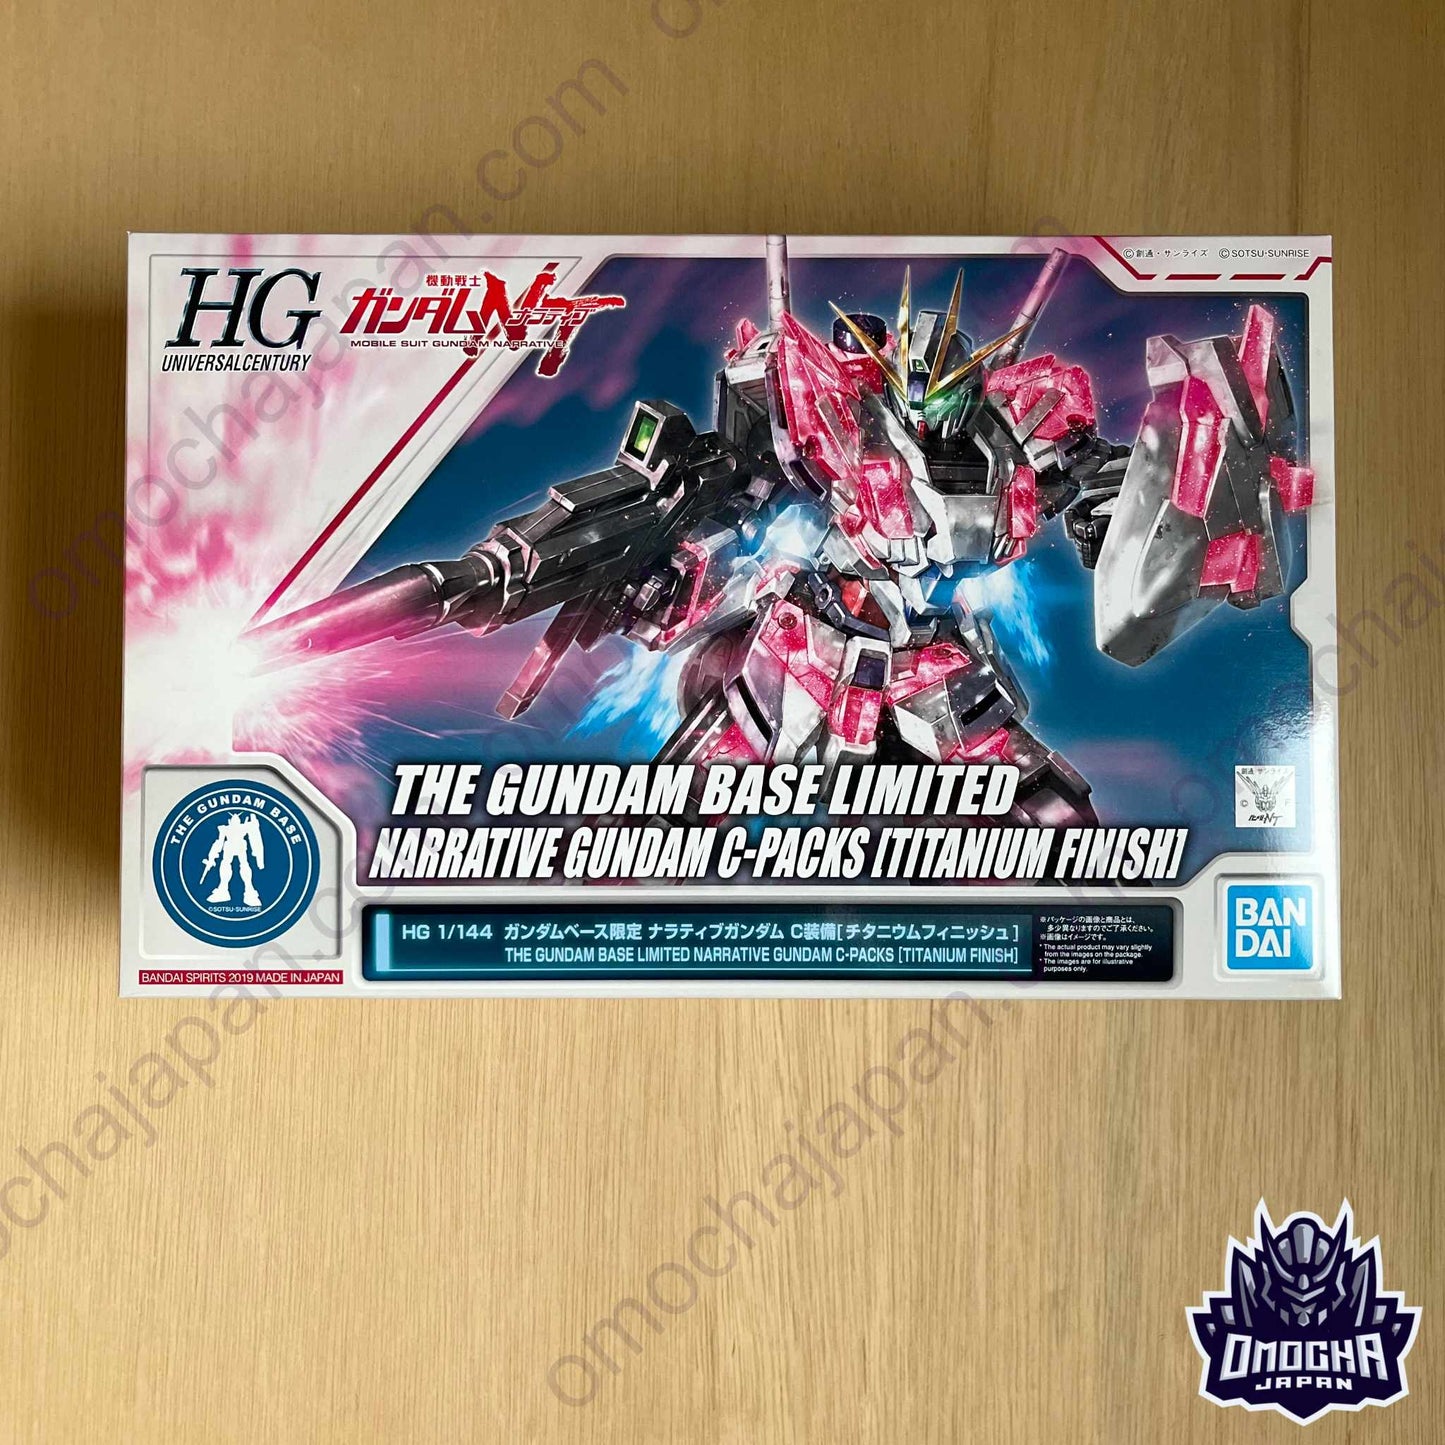 Gundam Base Limited HGUC 1/144 Narrative Gundam C-Packs Titanium Finish Ver